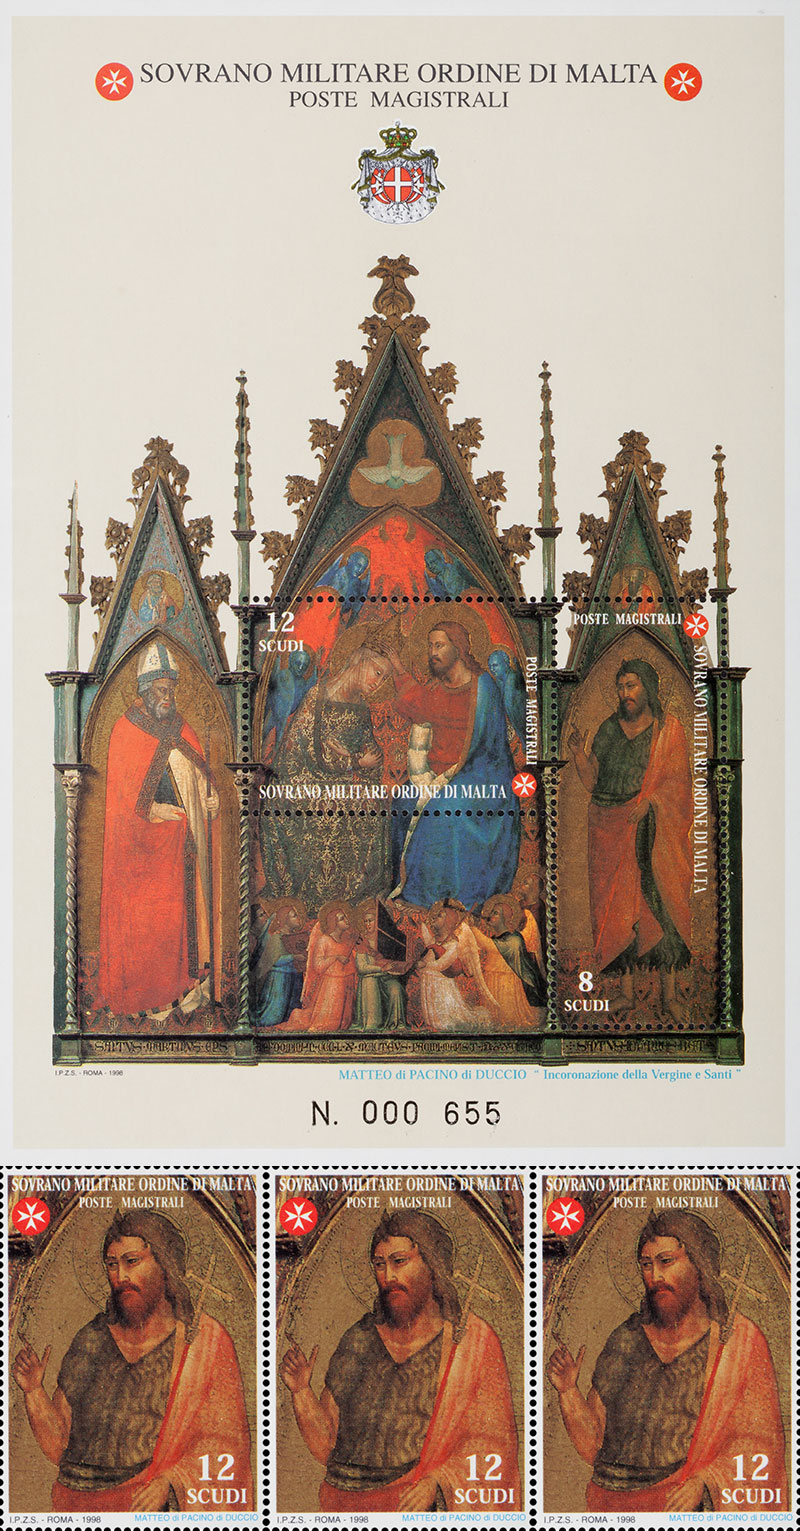 Emissione 242 – San Giovanni Battista patrono dell’Ordine